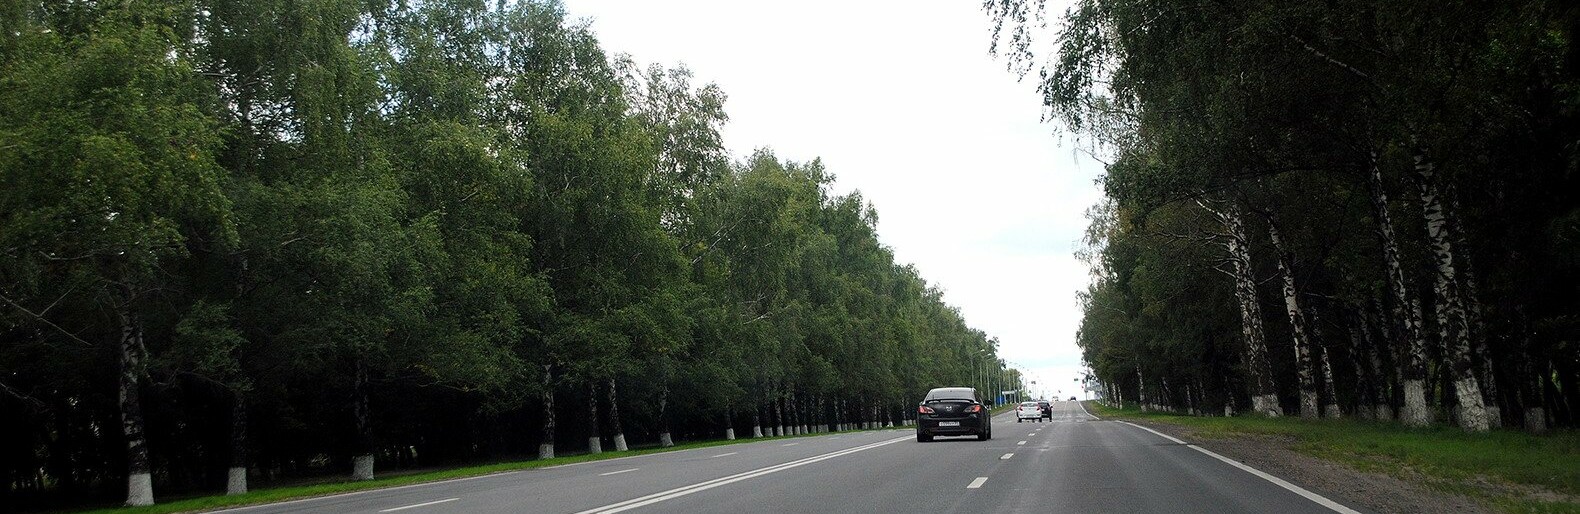 В Белгородской области за 220 млн рублей построят дорогу к научному центру «Бирюч»